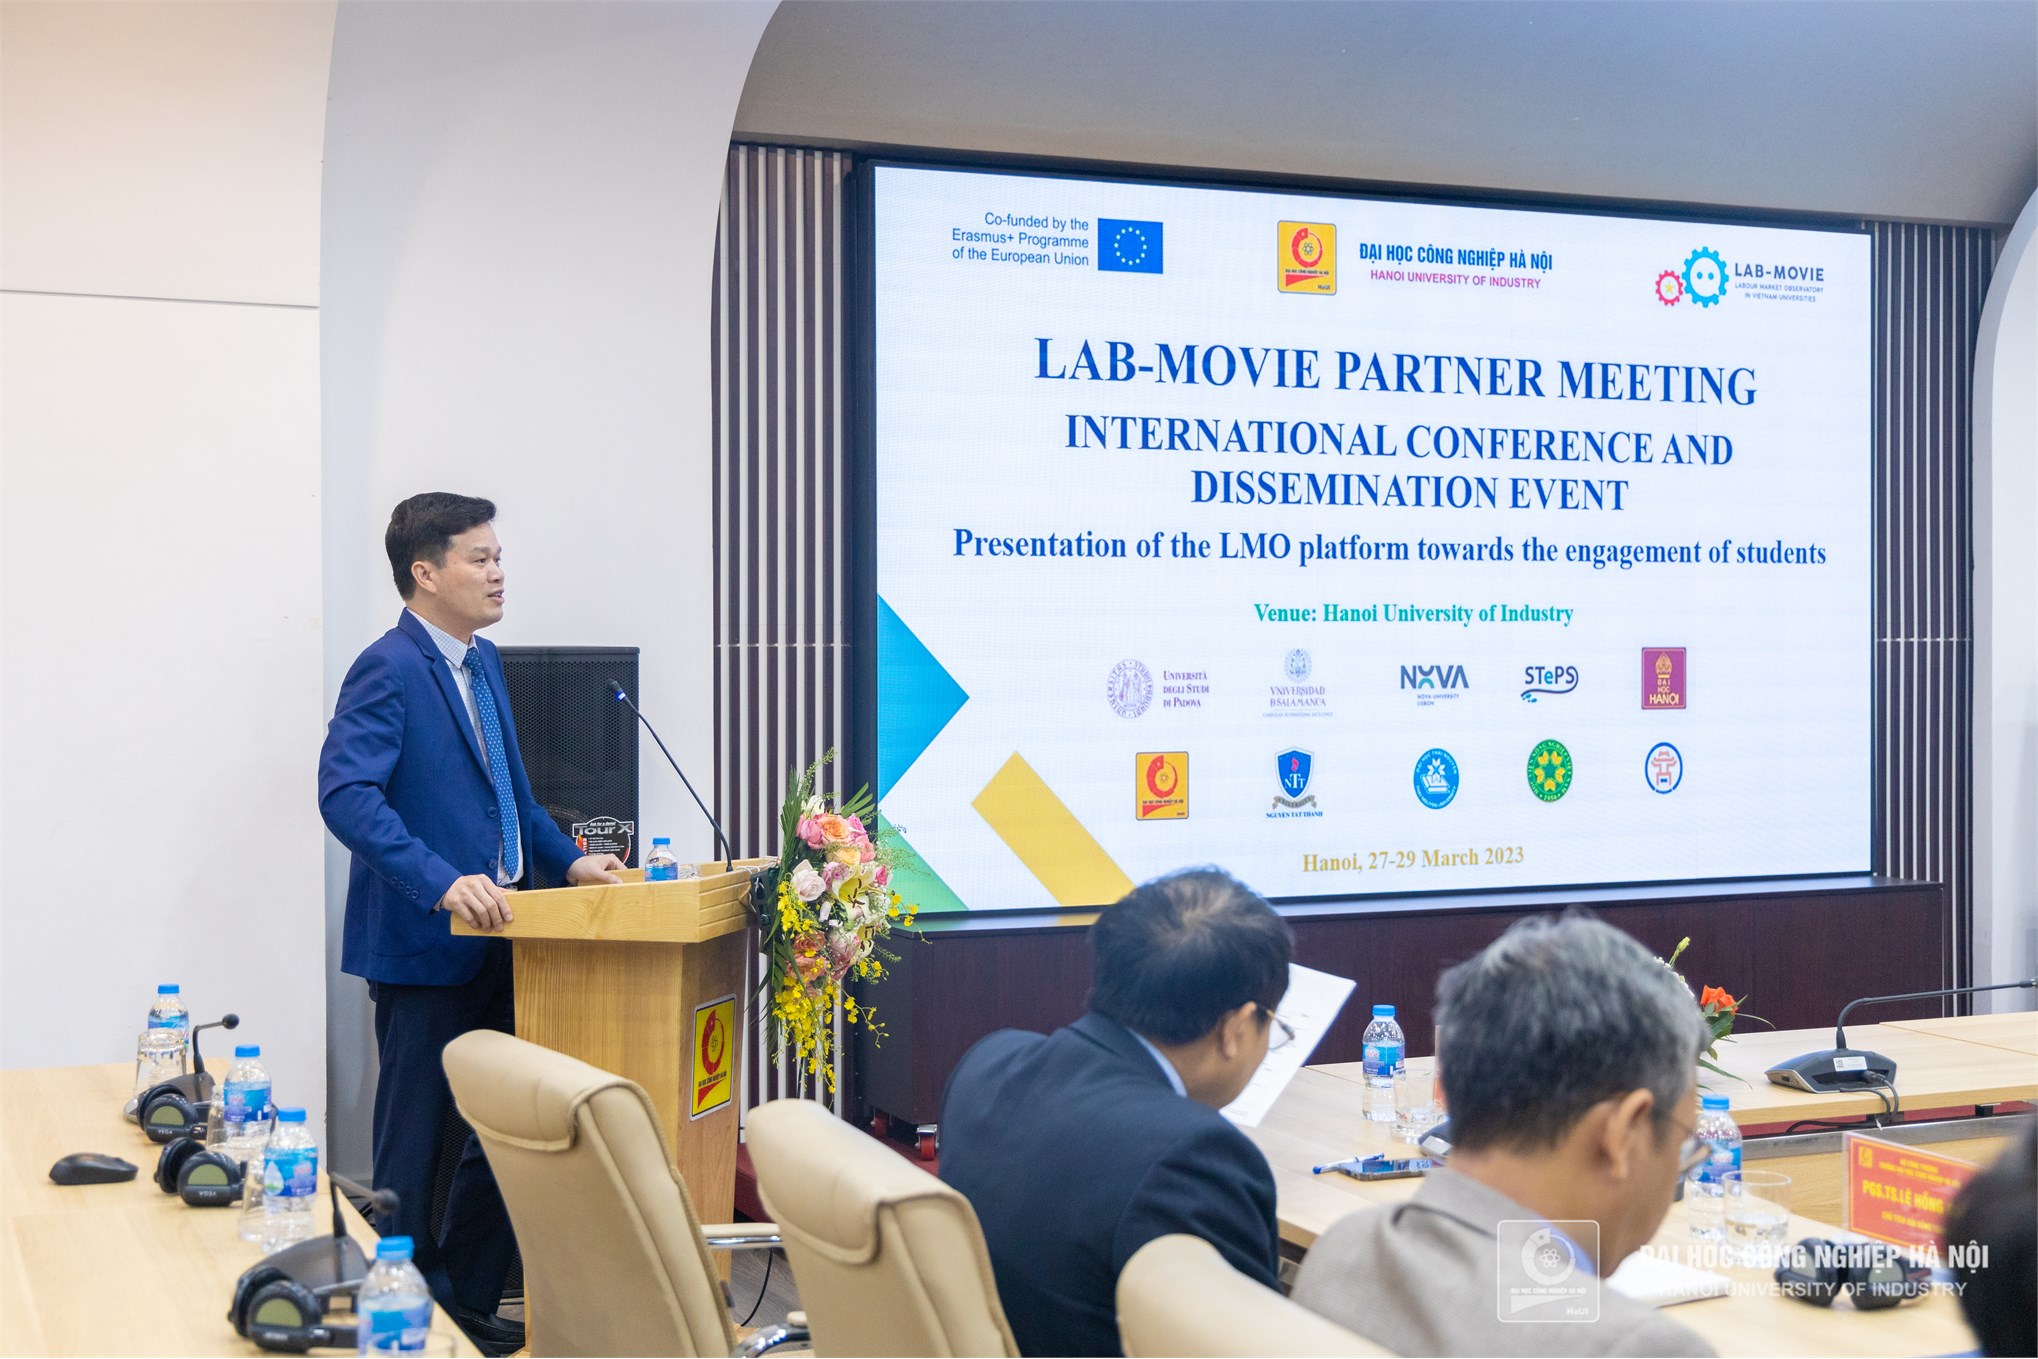 Lab –Movie: Cầu nối giữa đào tạo và thị trường lao động Việt Nam